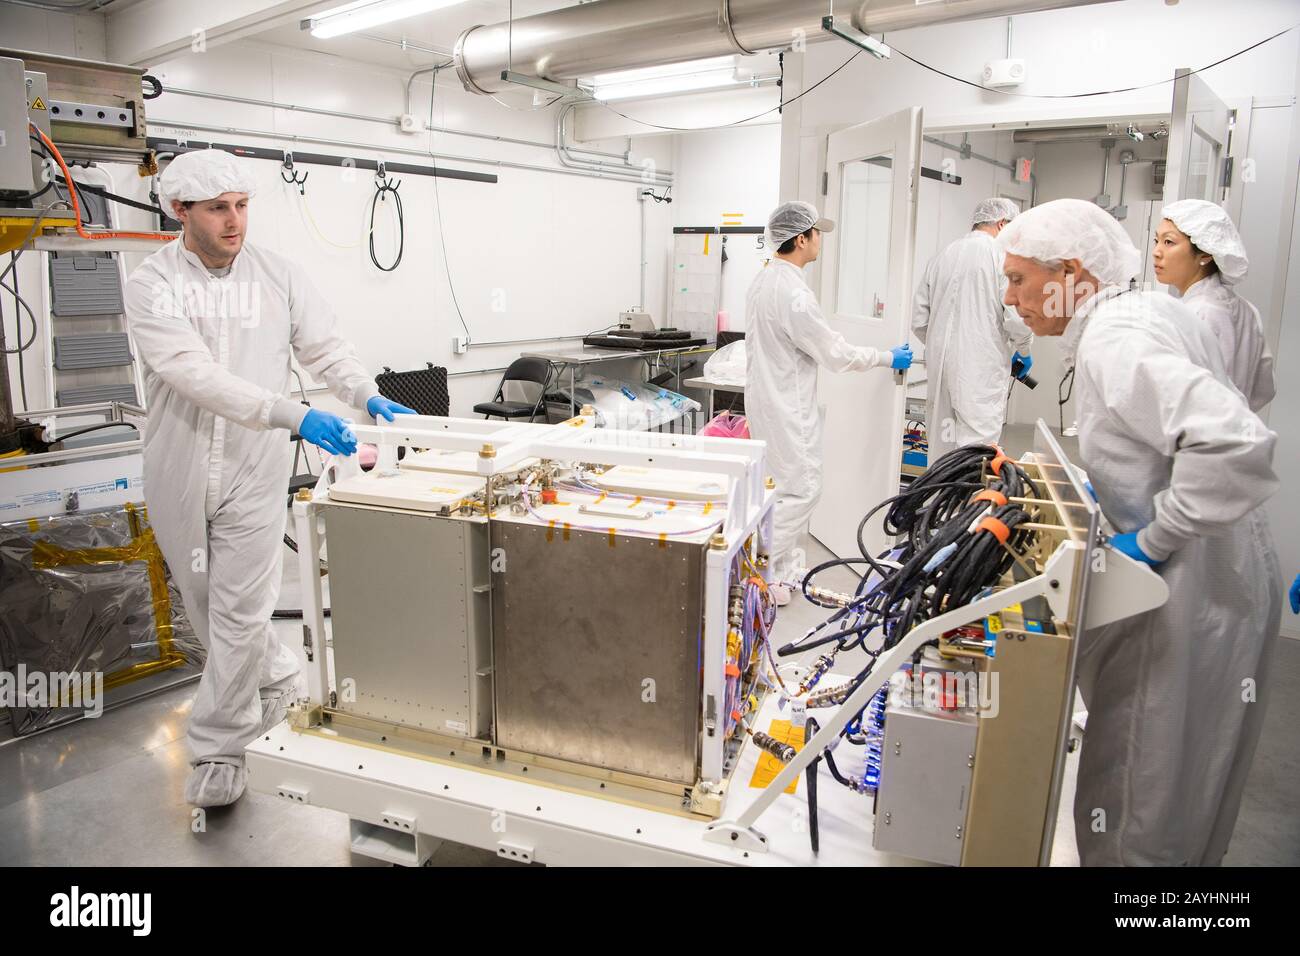 Isla Wallops, Estados Unidos. 15 de febrero de 2020. Los ingenieros de la misión traen la carga final para cargarla en la nave espacial Cygnus Resupply a bordo del cohete Northrop Grumman Antares, el 8 de febrero de 2020, en el lanzamiento de Pad-0A de la instalación de vuelo Wallops de la NASA en Virginia. La 13ª misión de reabastecimiento de carga contratada de Northrop Grumman con la NASA a la Estación Espacial Internacional entregará más de 7,500 libras de ciencia e investigación, suministros para la tripulación y equipo para vehículos al laboratorio orbital y a su tripulación. Foto de la NASA por Aubrey Gemignani/UPI crédito: UPI/Alamy Live News Foto de stock